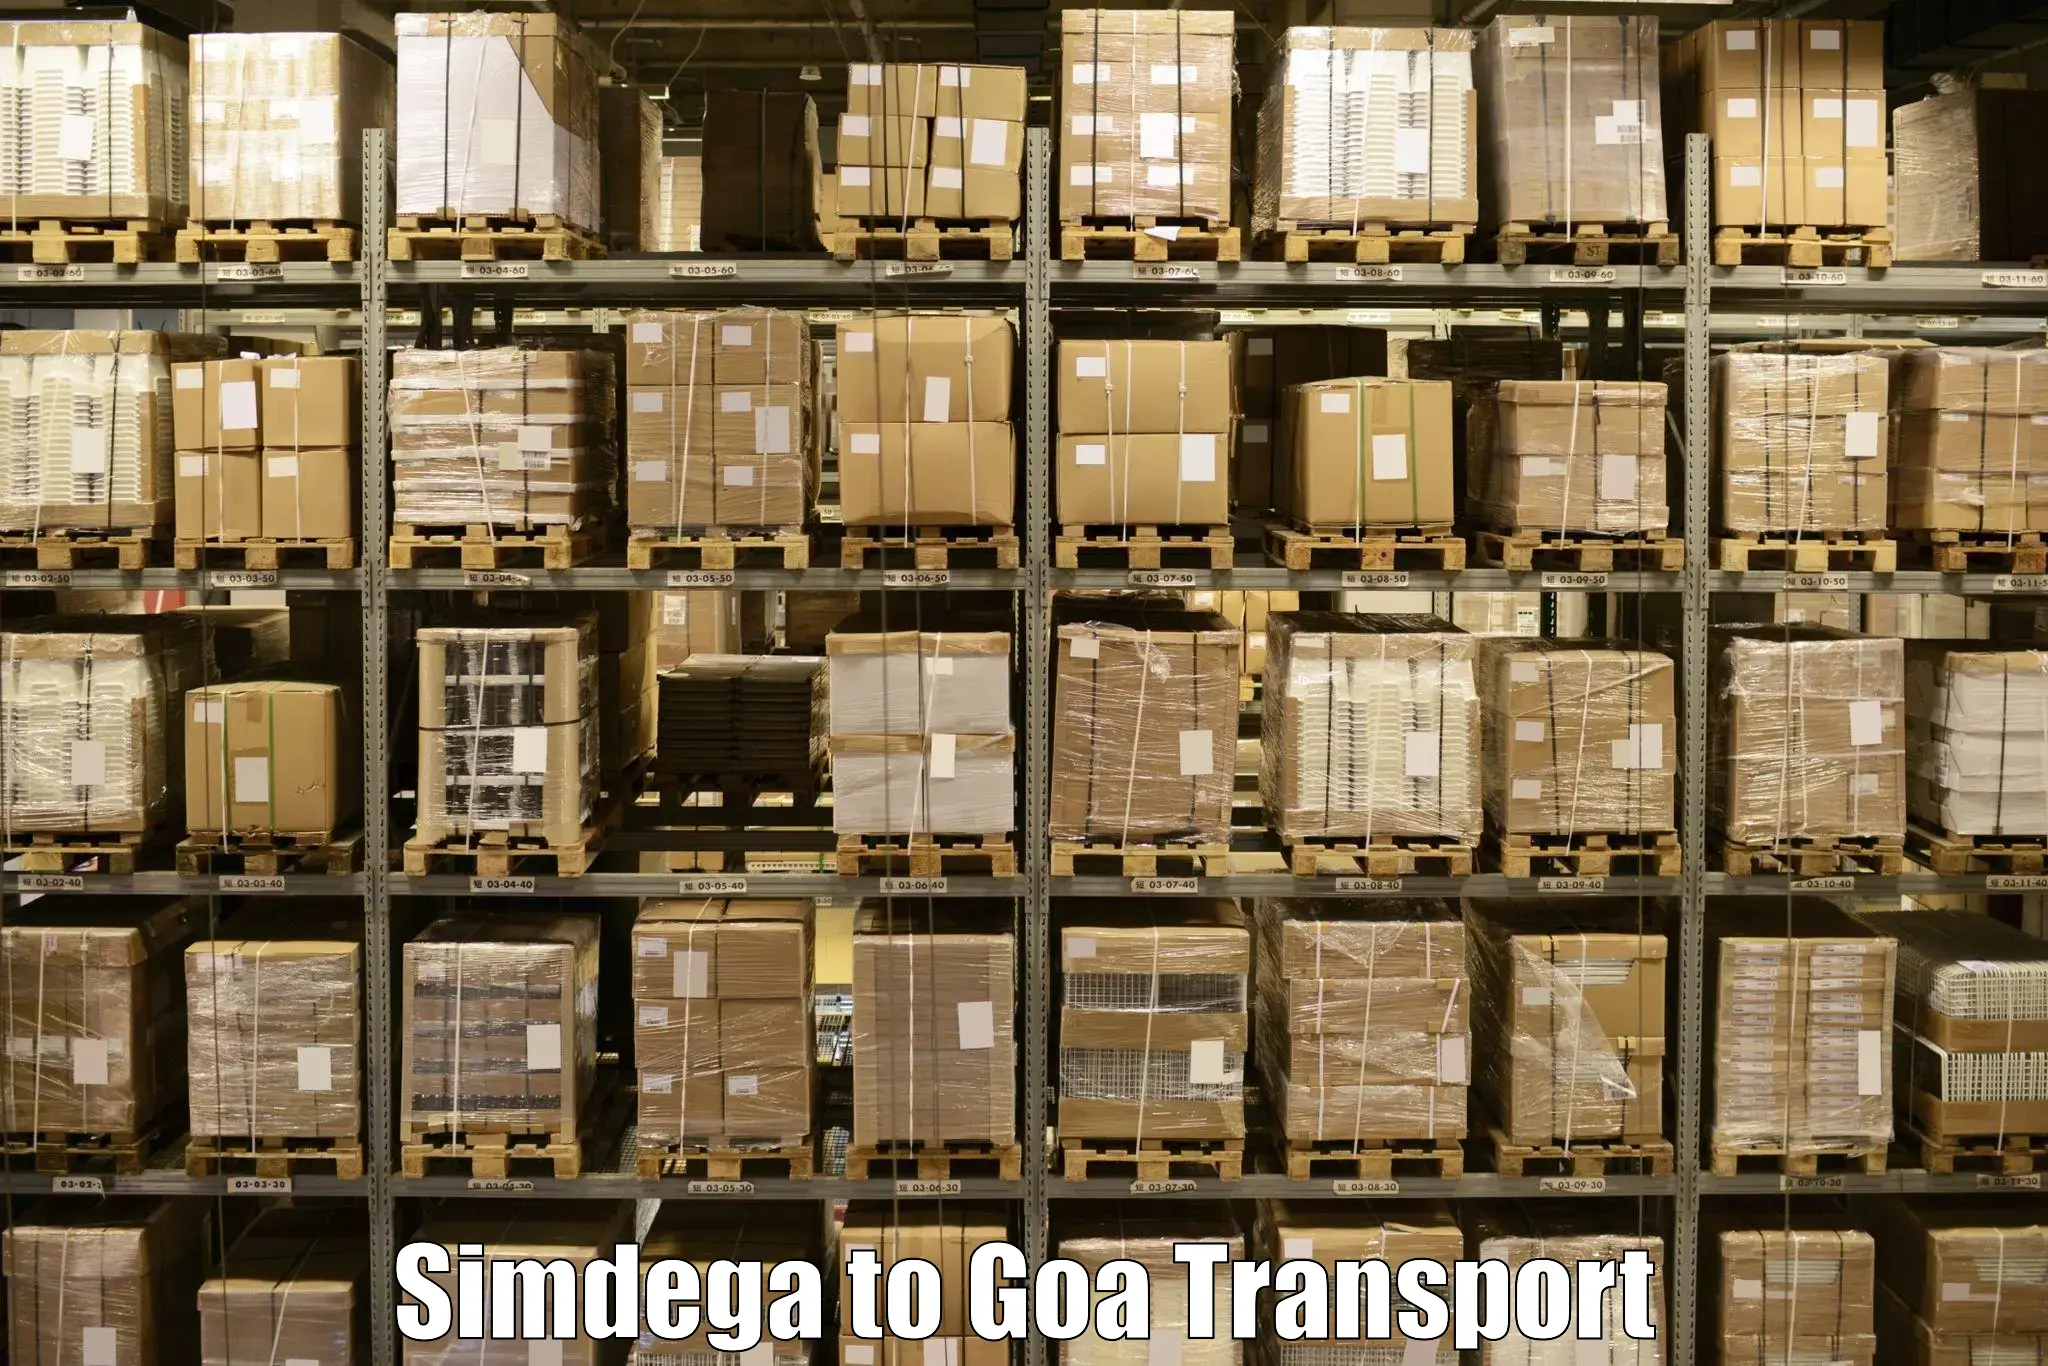 Door to door transport services Simdega to Margao